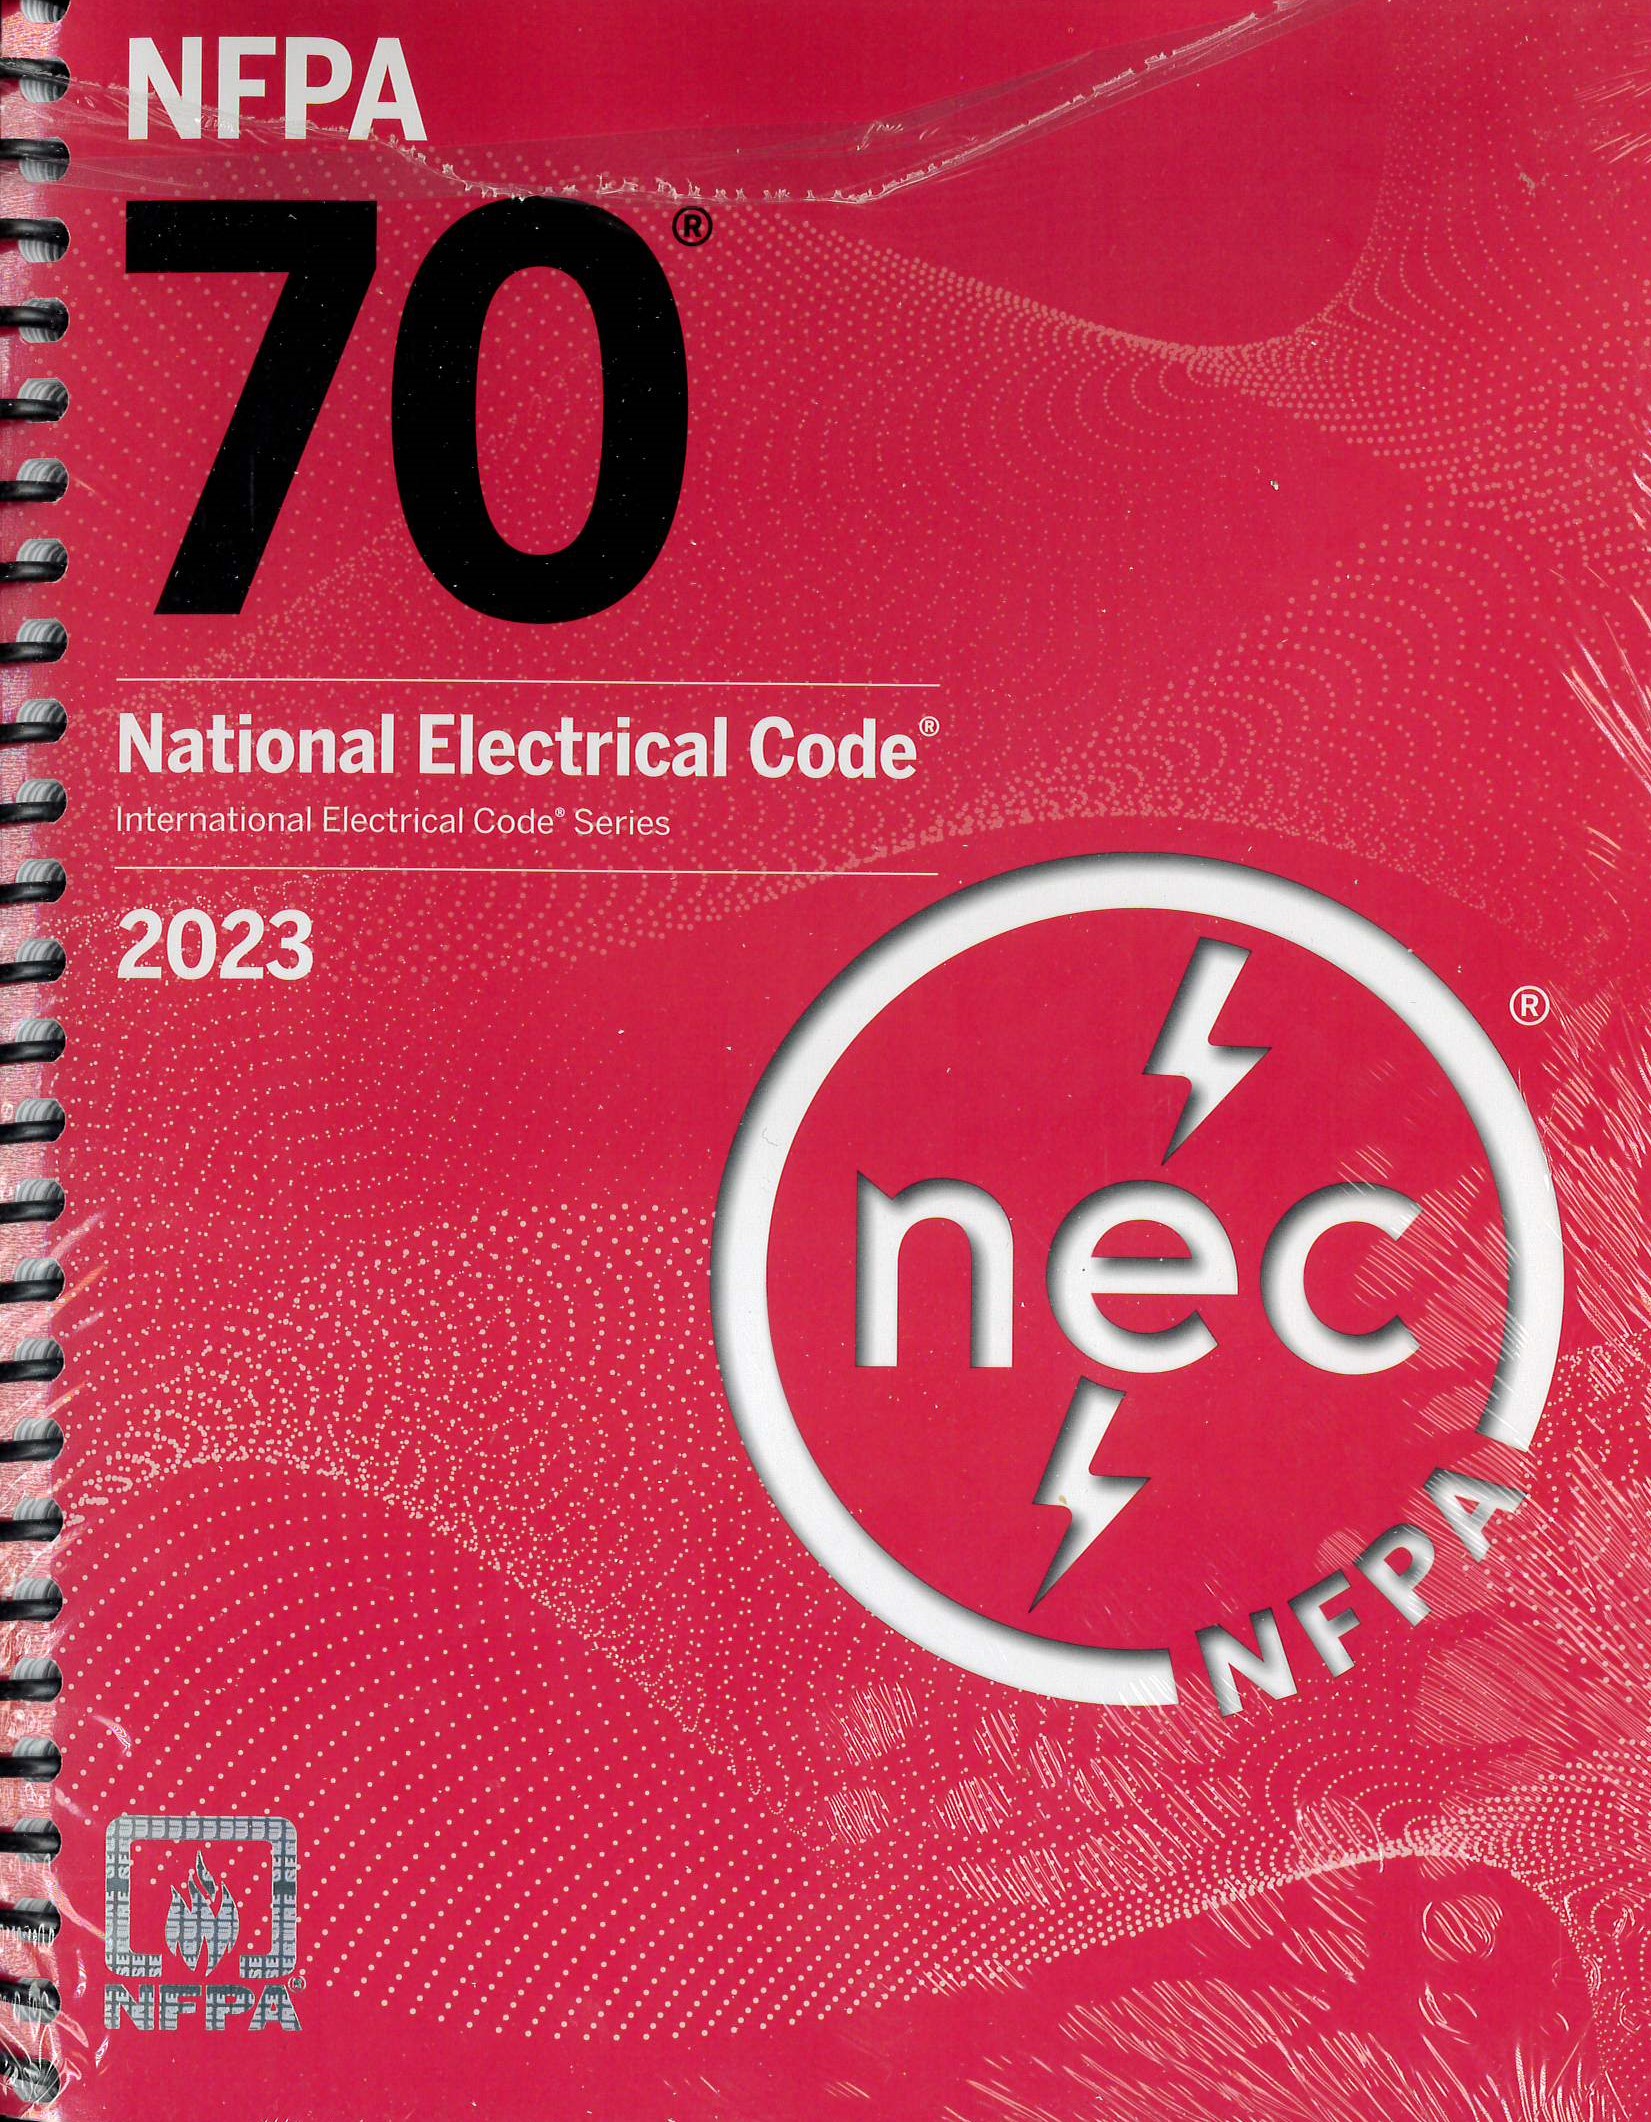 NFPA70 NEC Spriral Bound 2023 Edition